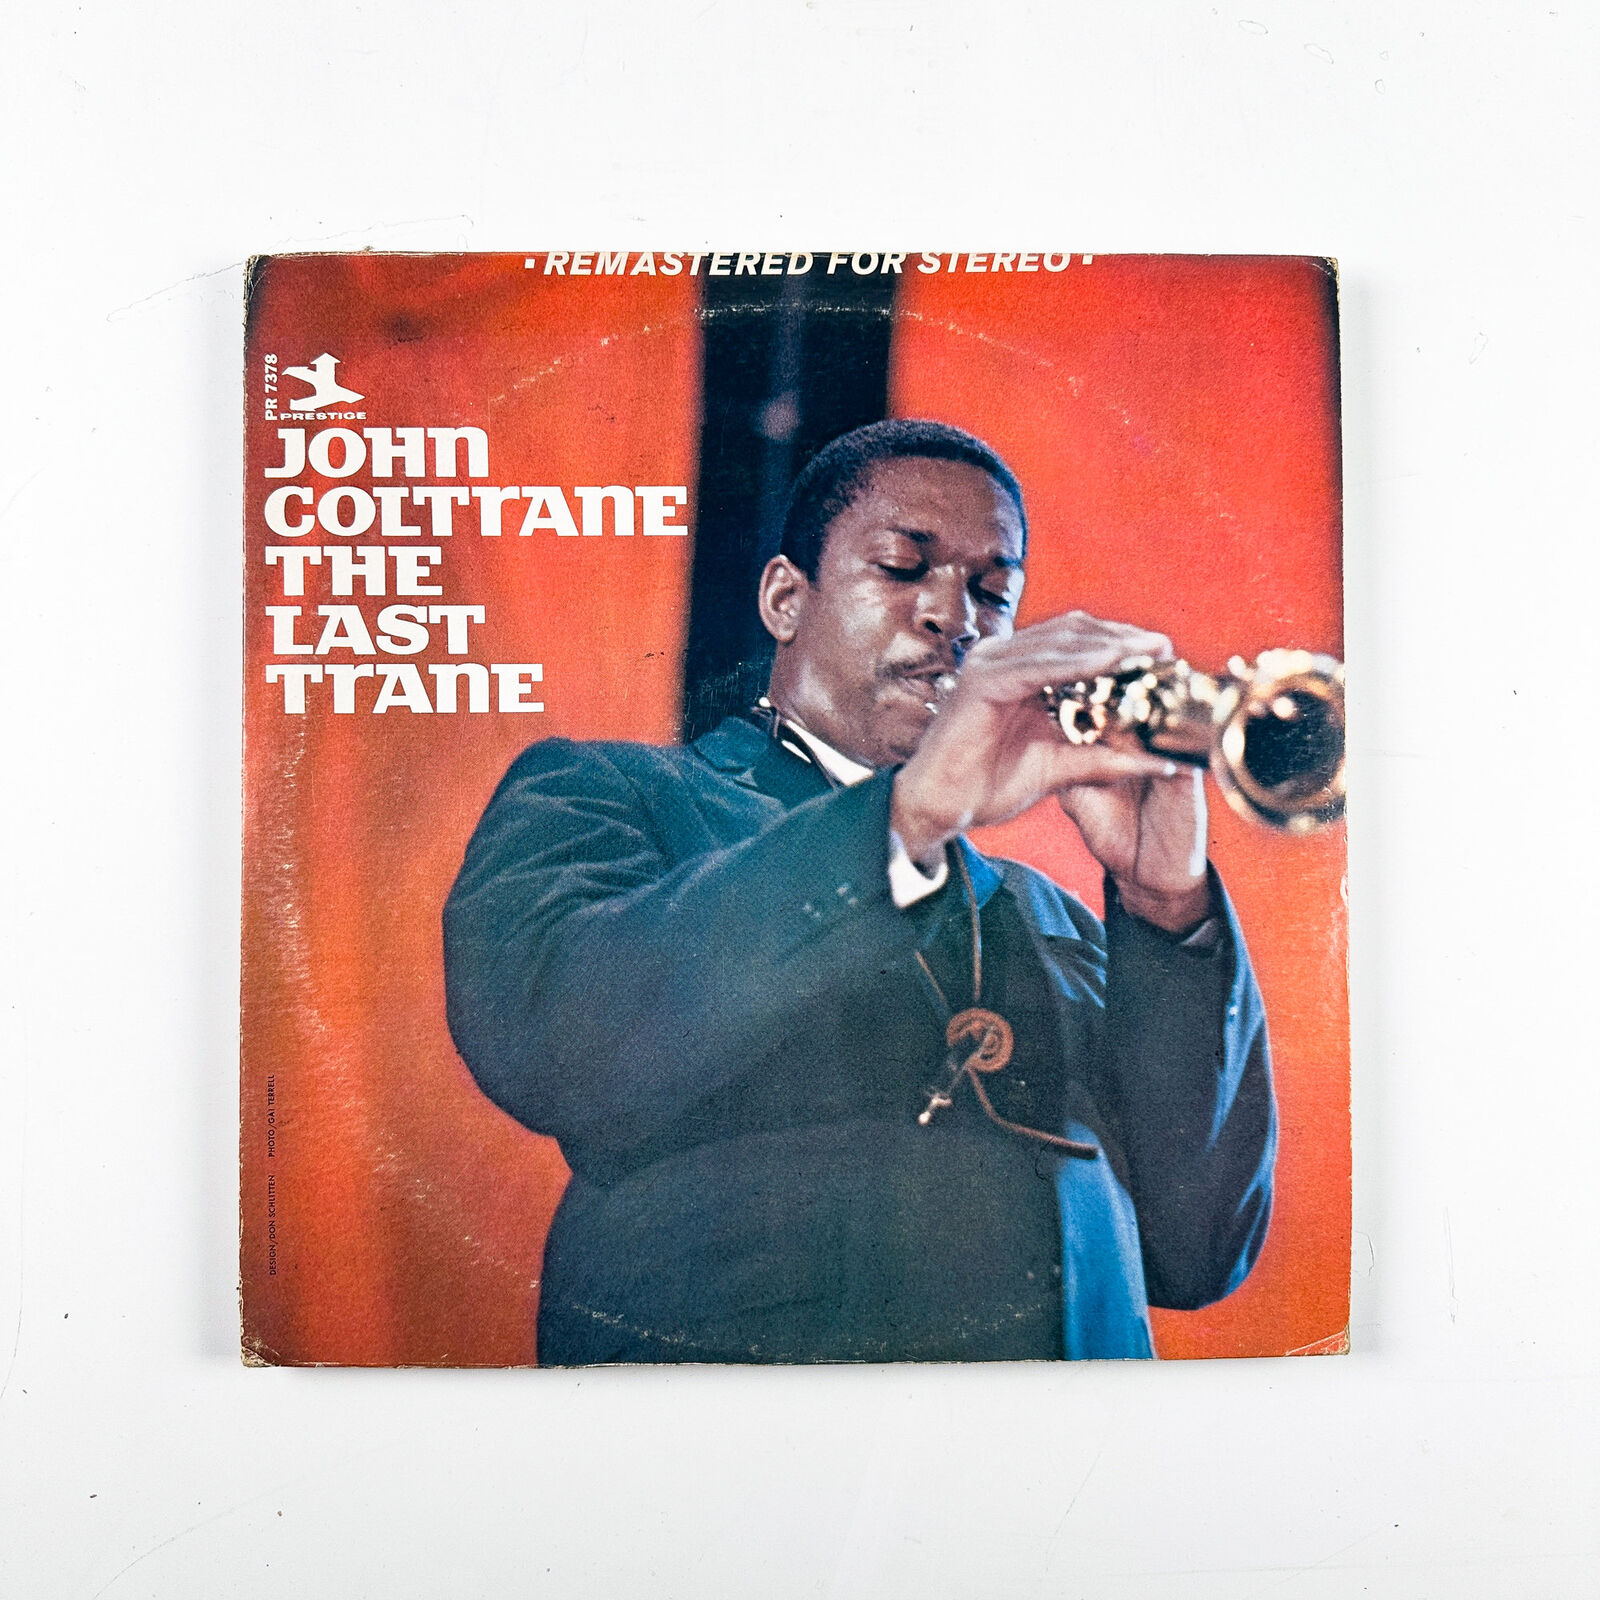 John Coltrane - The Last Trane - Vinyl LP Record - 1972